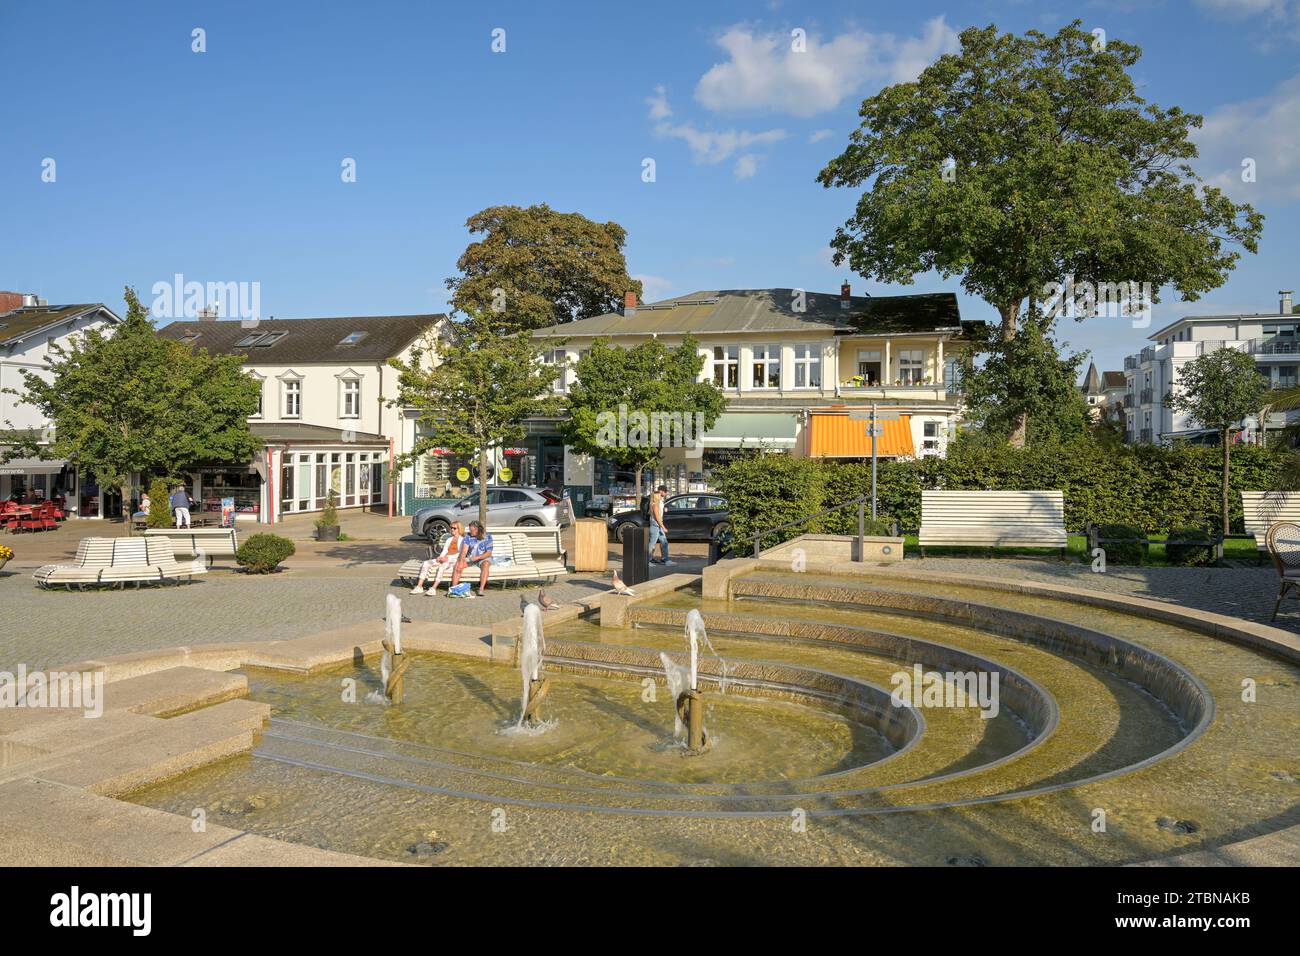 Kaskaden-Brunnen, Seestraße, Stadtzentrum, Ahlbeck, Usedom, Mecklenburg-Vorpommern, Deutschland Stock Photo